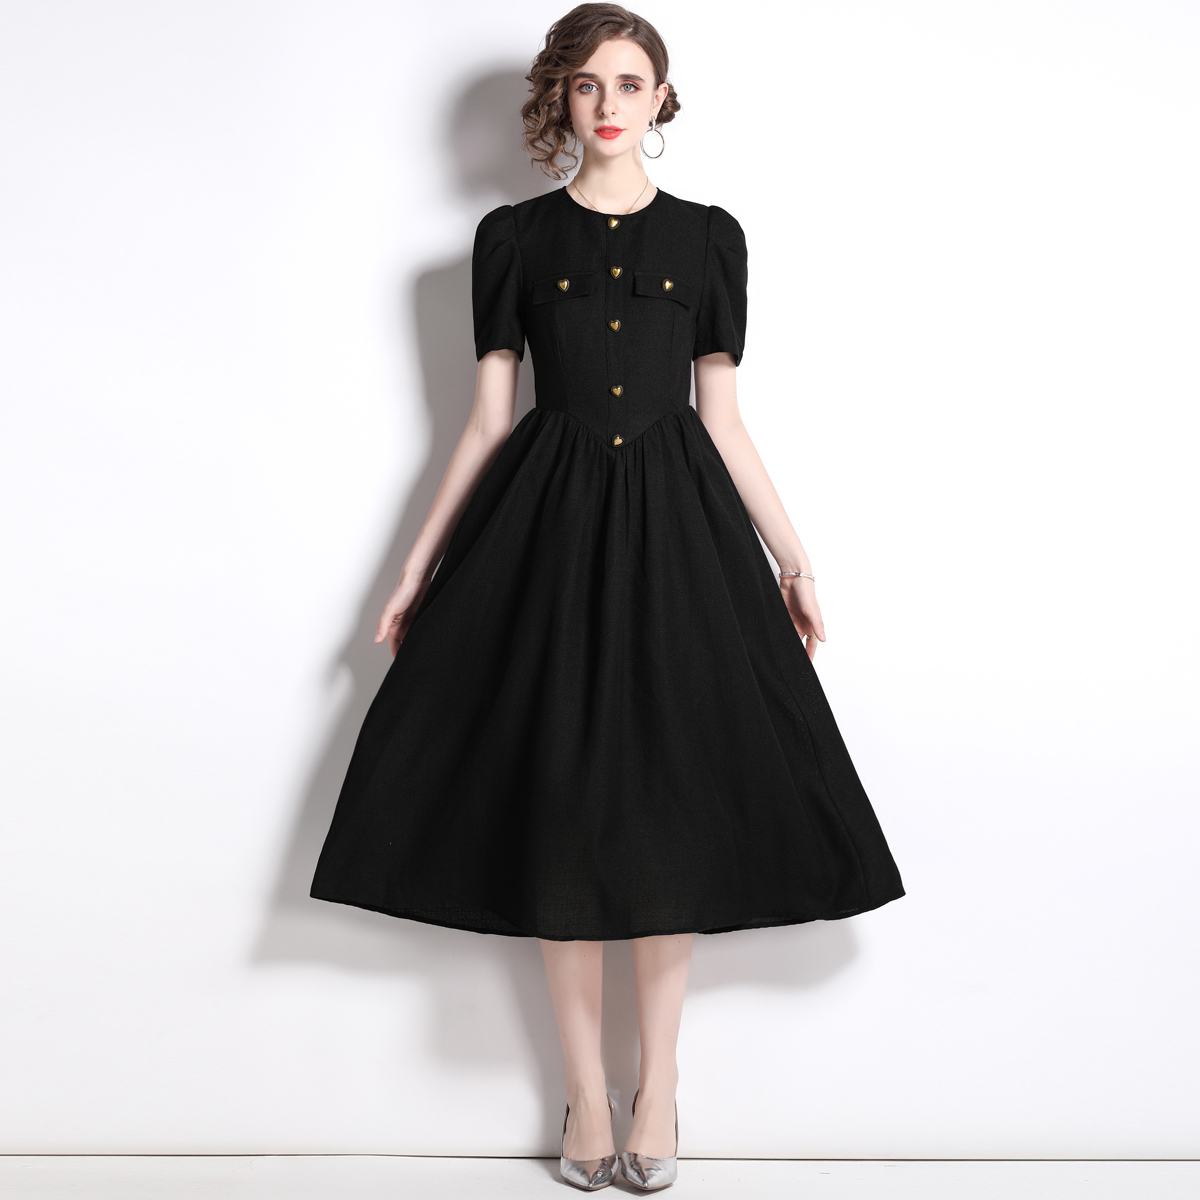 Black formal dress summer dress for women